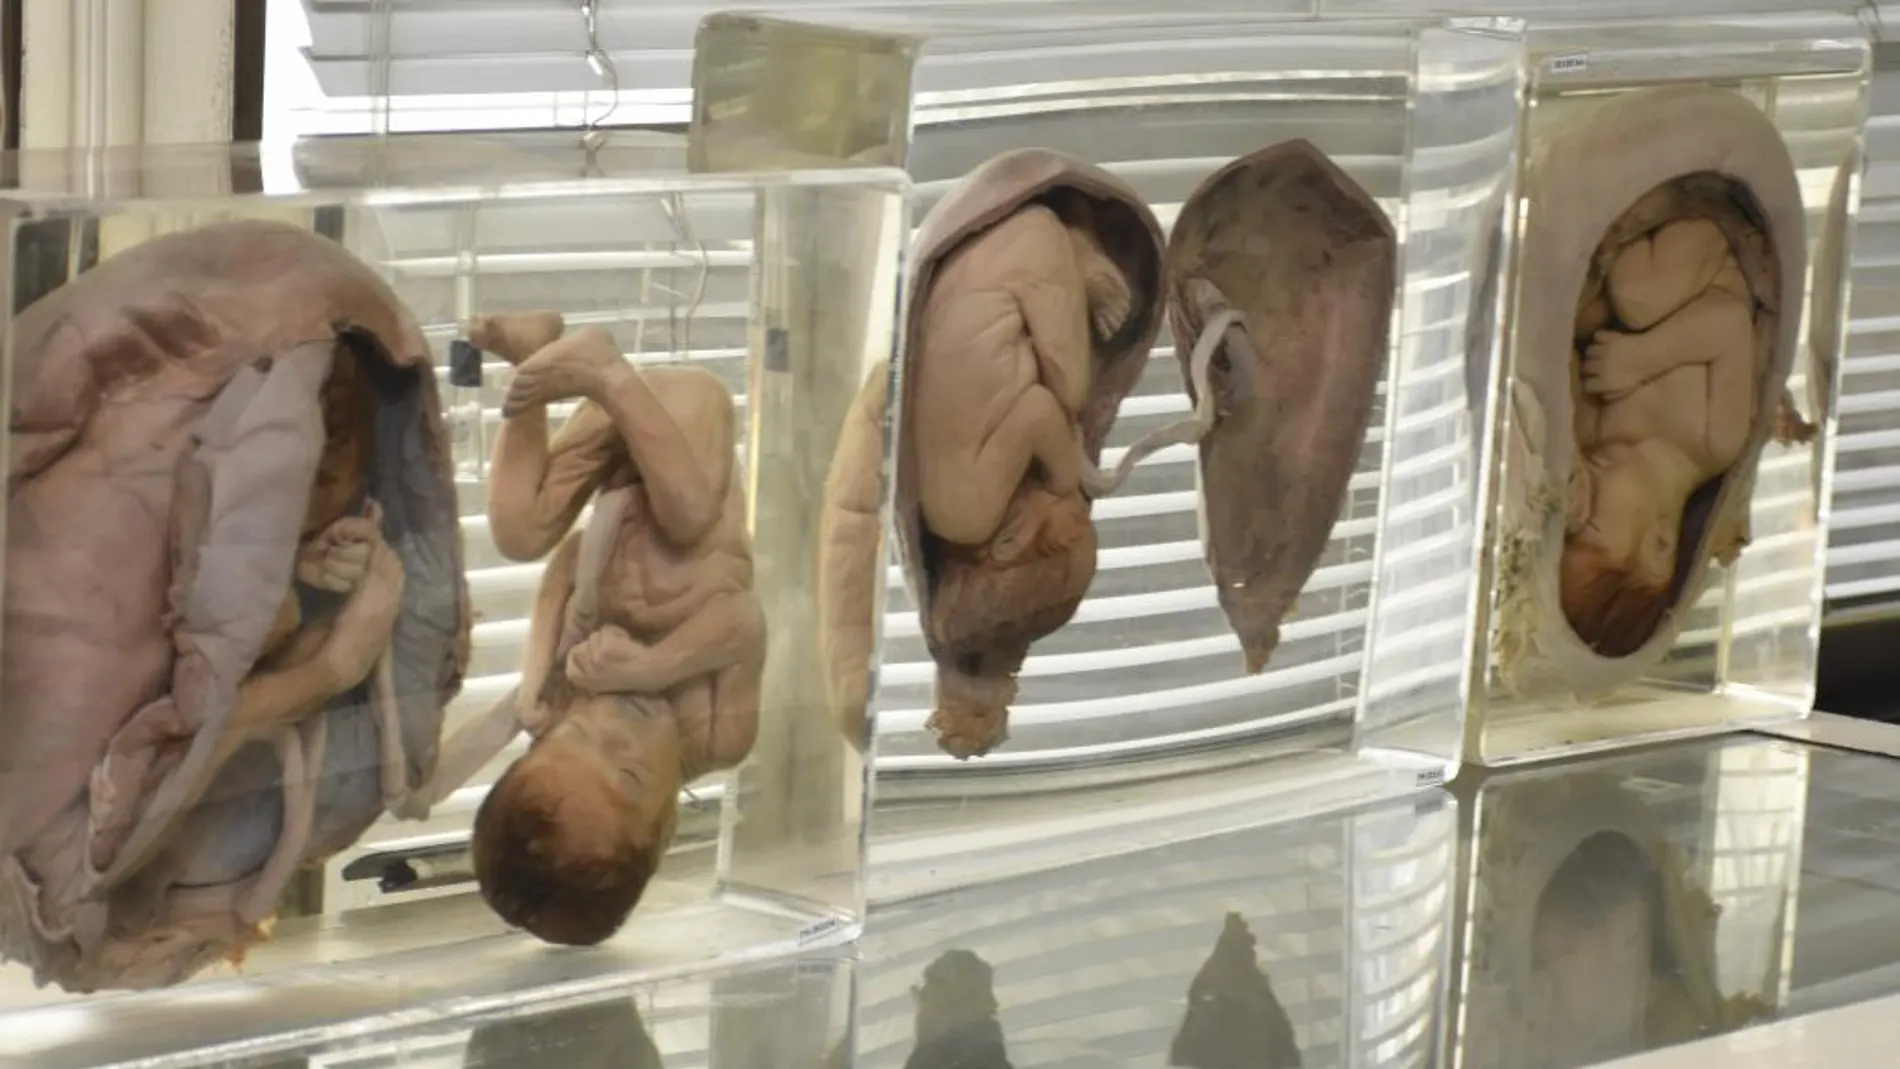 Fotografía facilitada por el Departamento forense del complejo hospitalario de Sijirat de varios fetos exhibidos en el museo forense del Hospital.